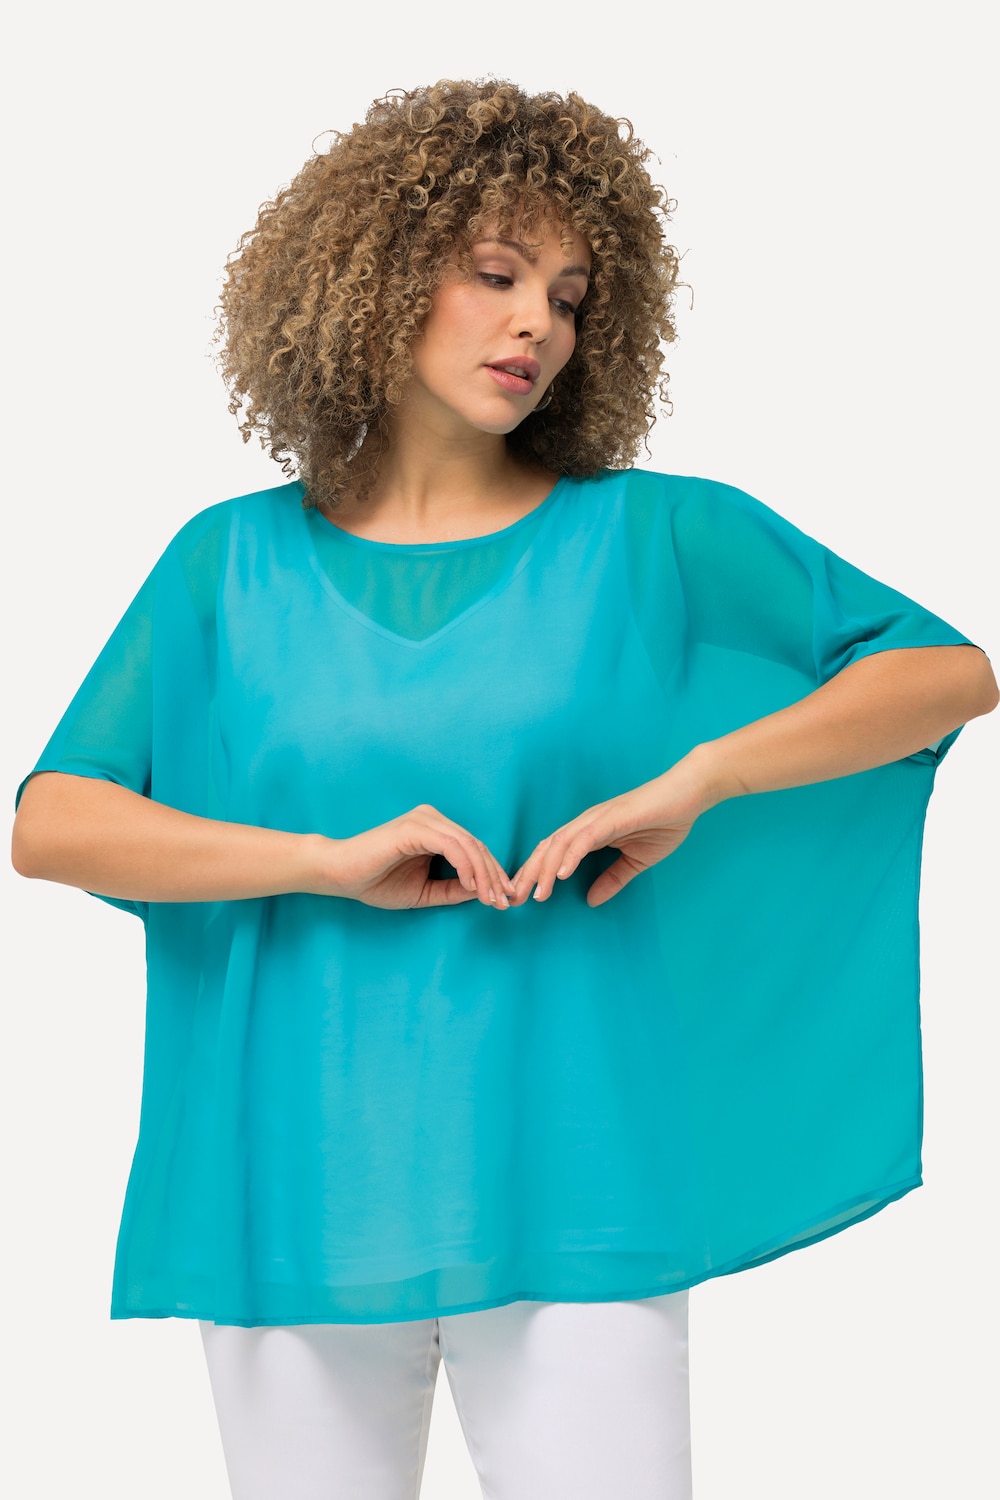 Grote Maten Chiffon blouse, Dames, turquoise, Maat: 3=58-64, Polyester, Ulla Popken